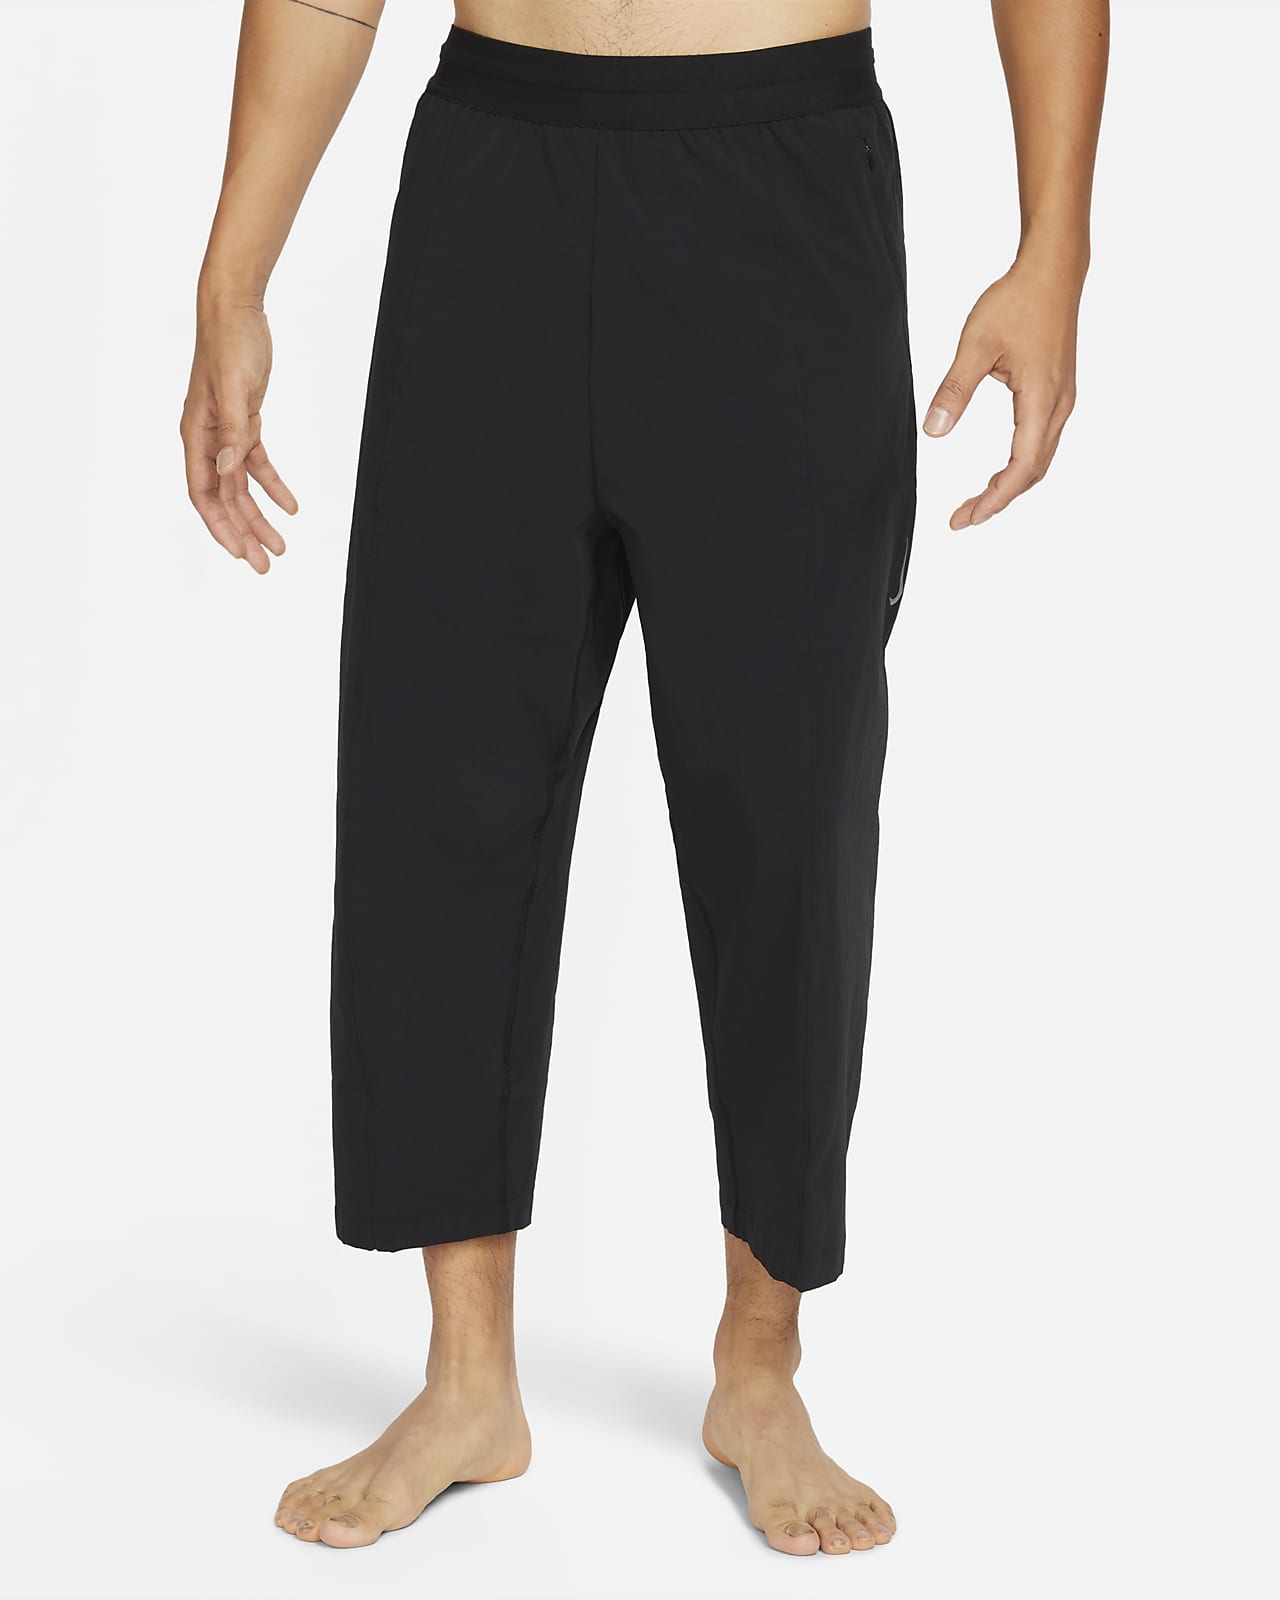 Nike Yoga Dri-FIT Men's Cropped Pants